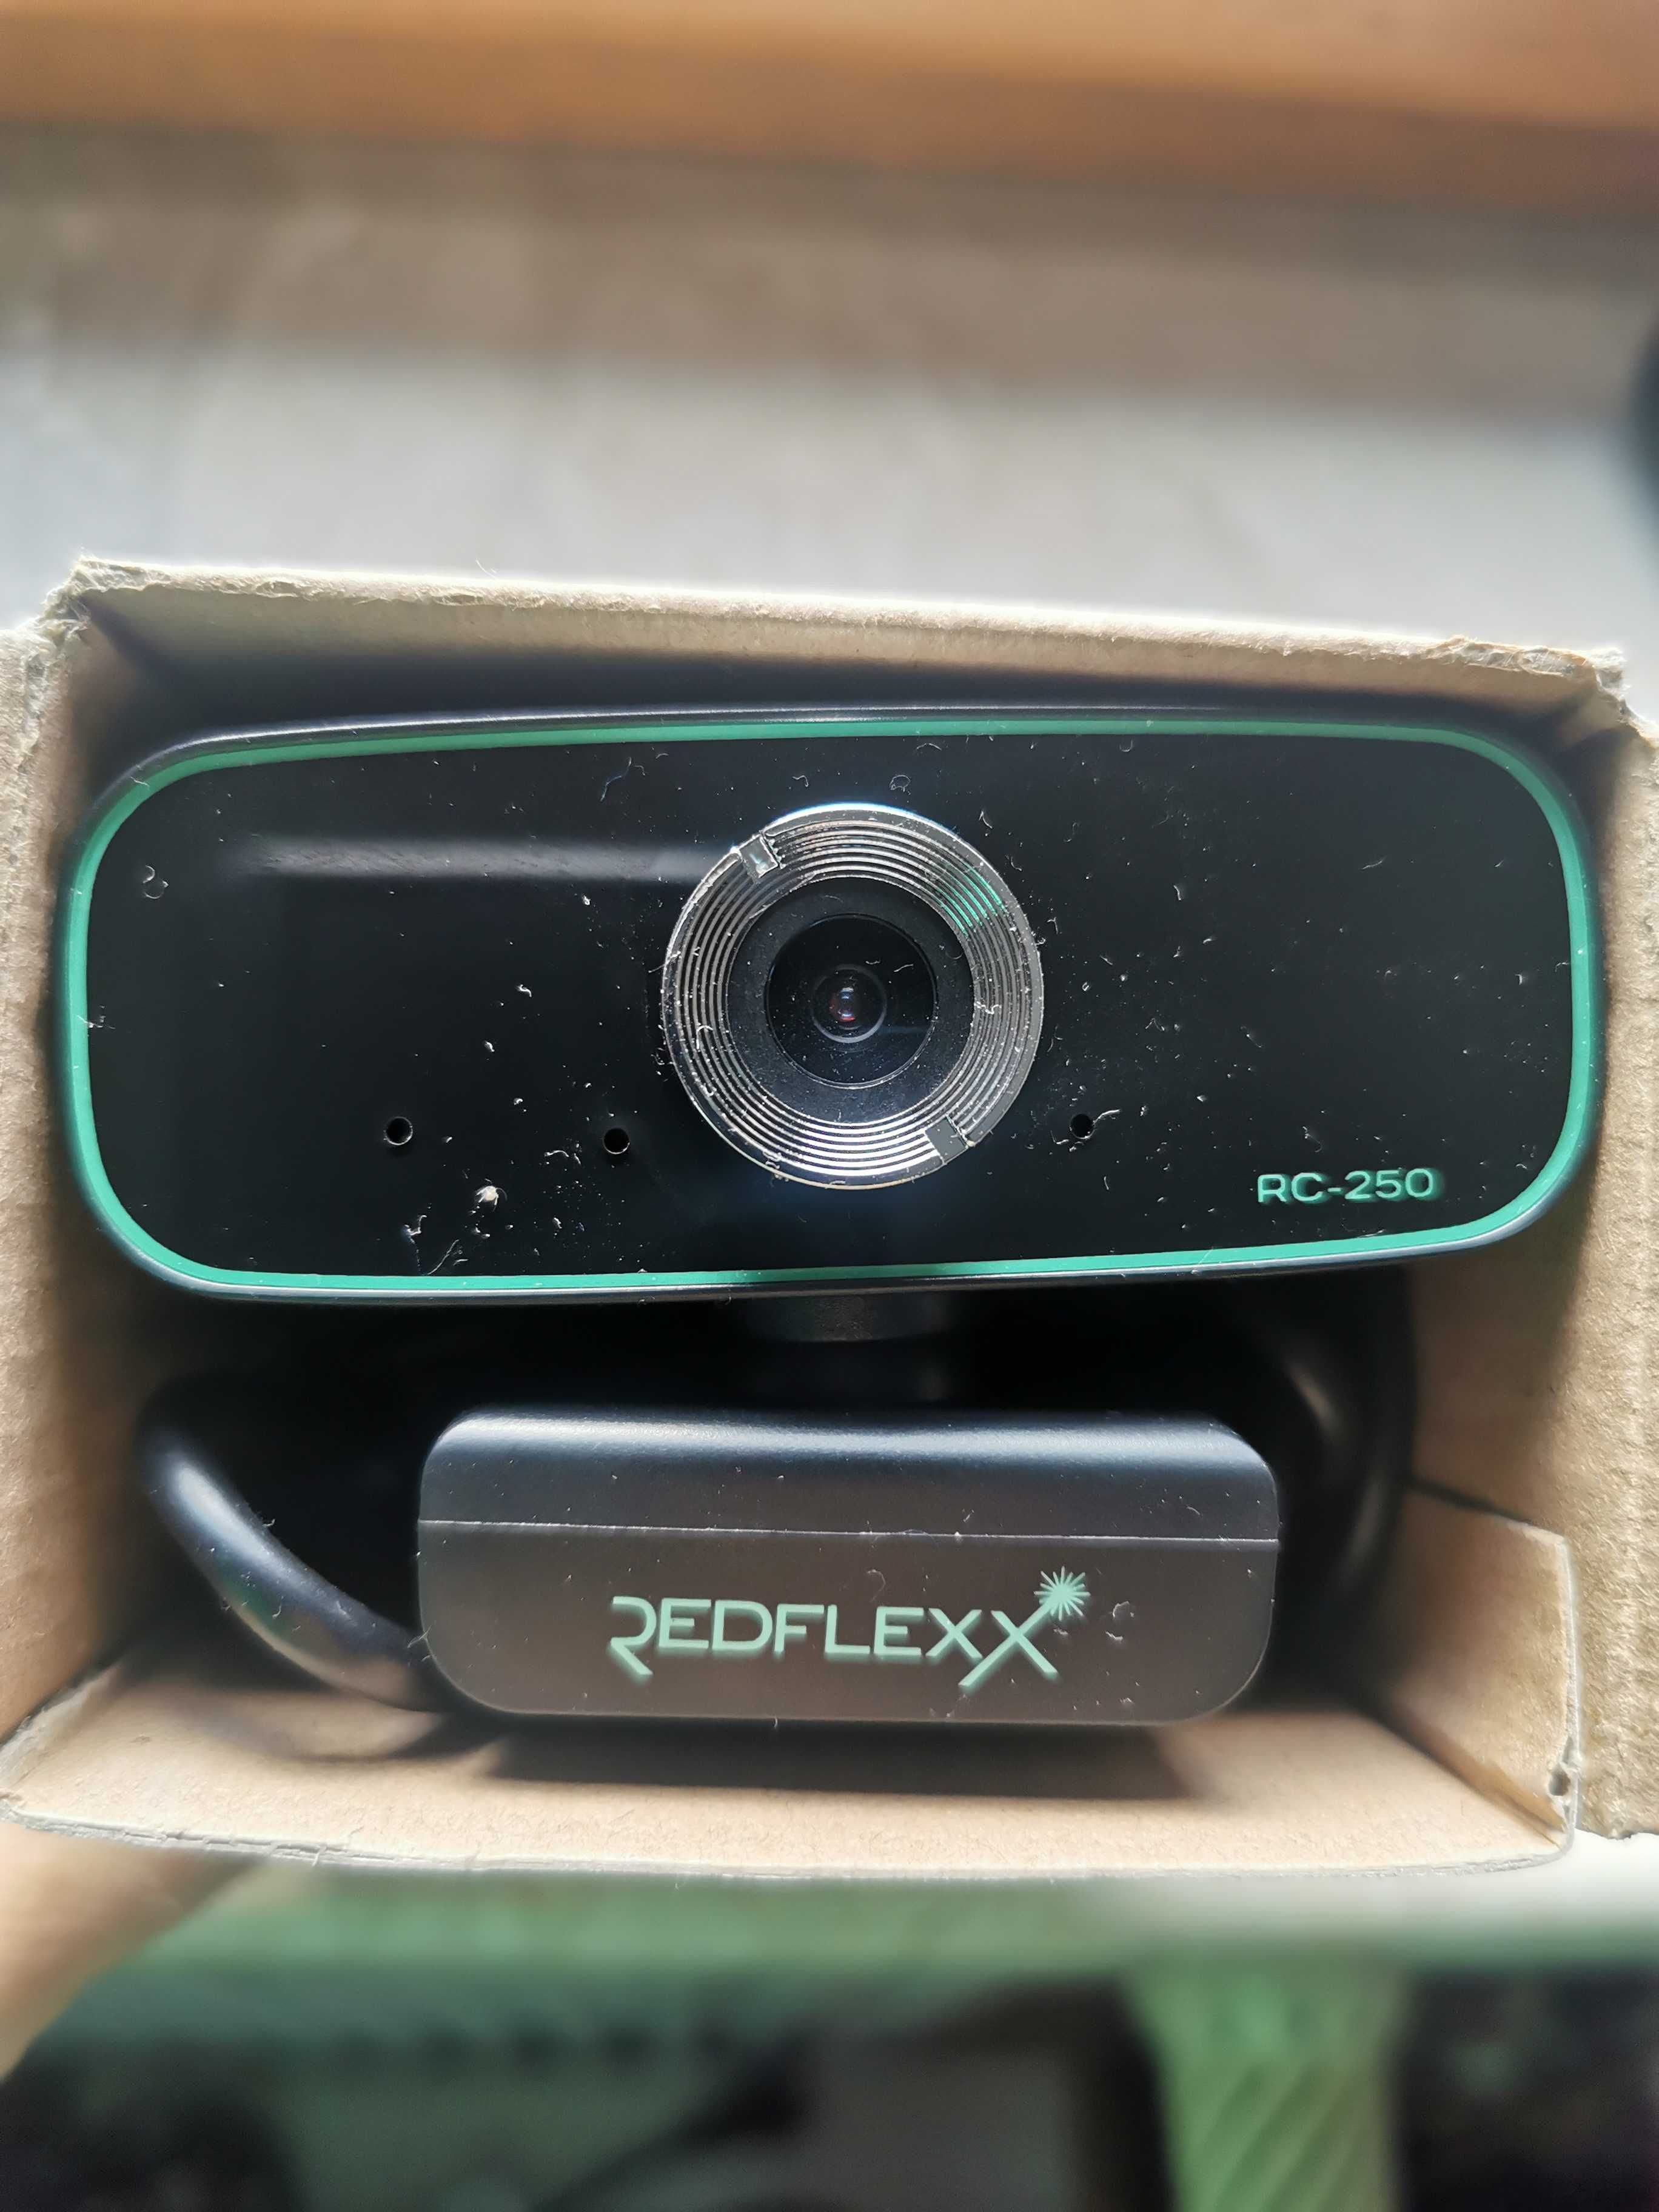 Kamerka internetowa Redflexx redcam rc-250 NOWA